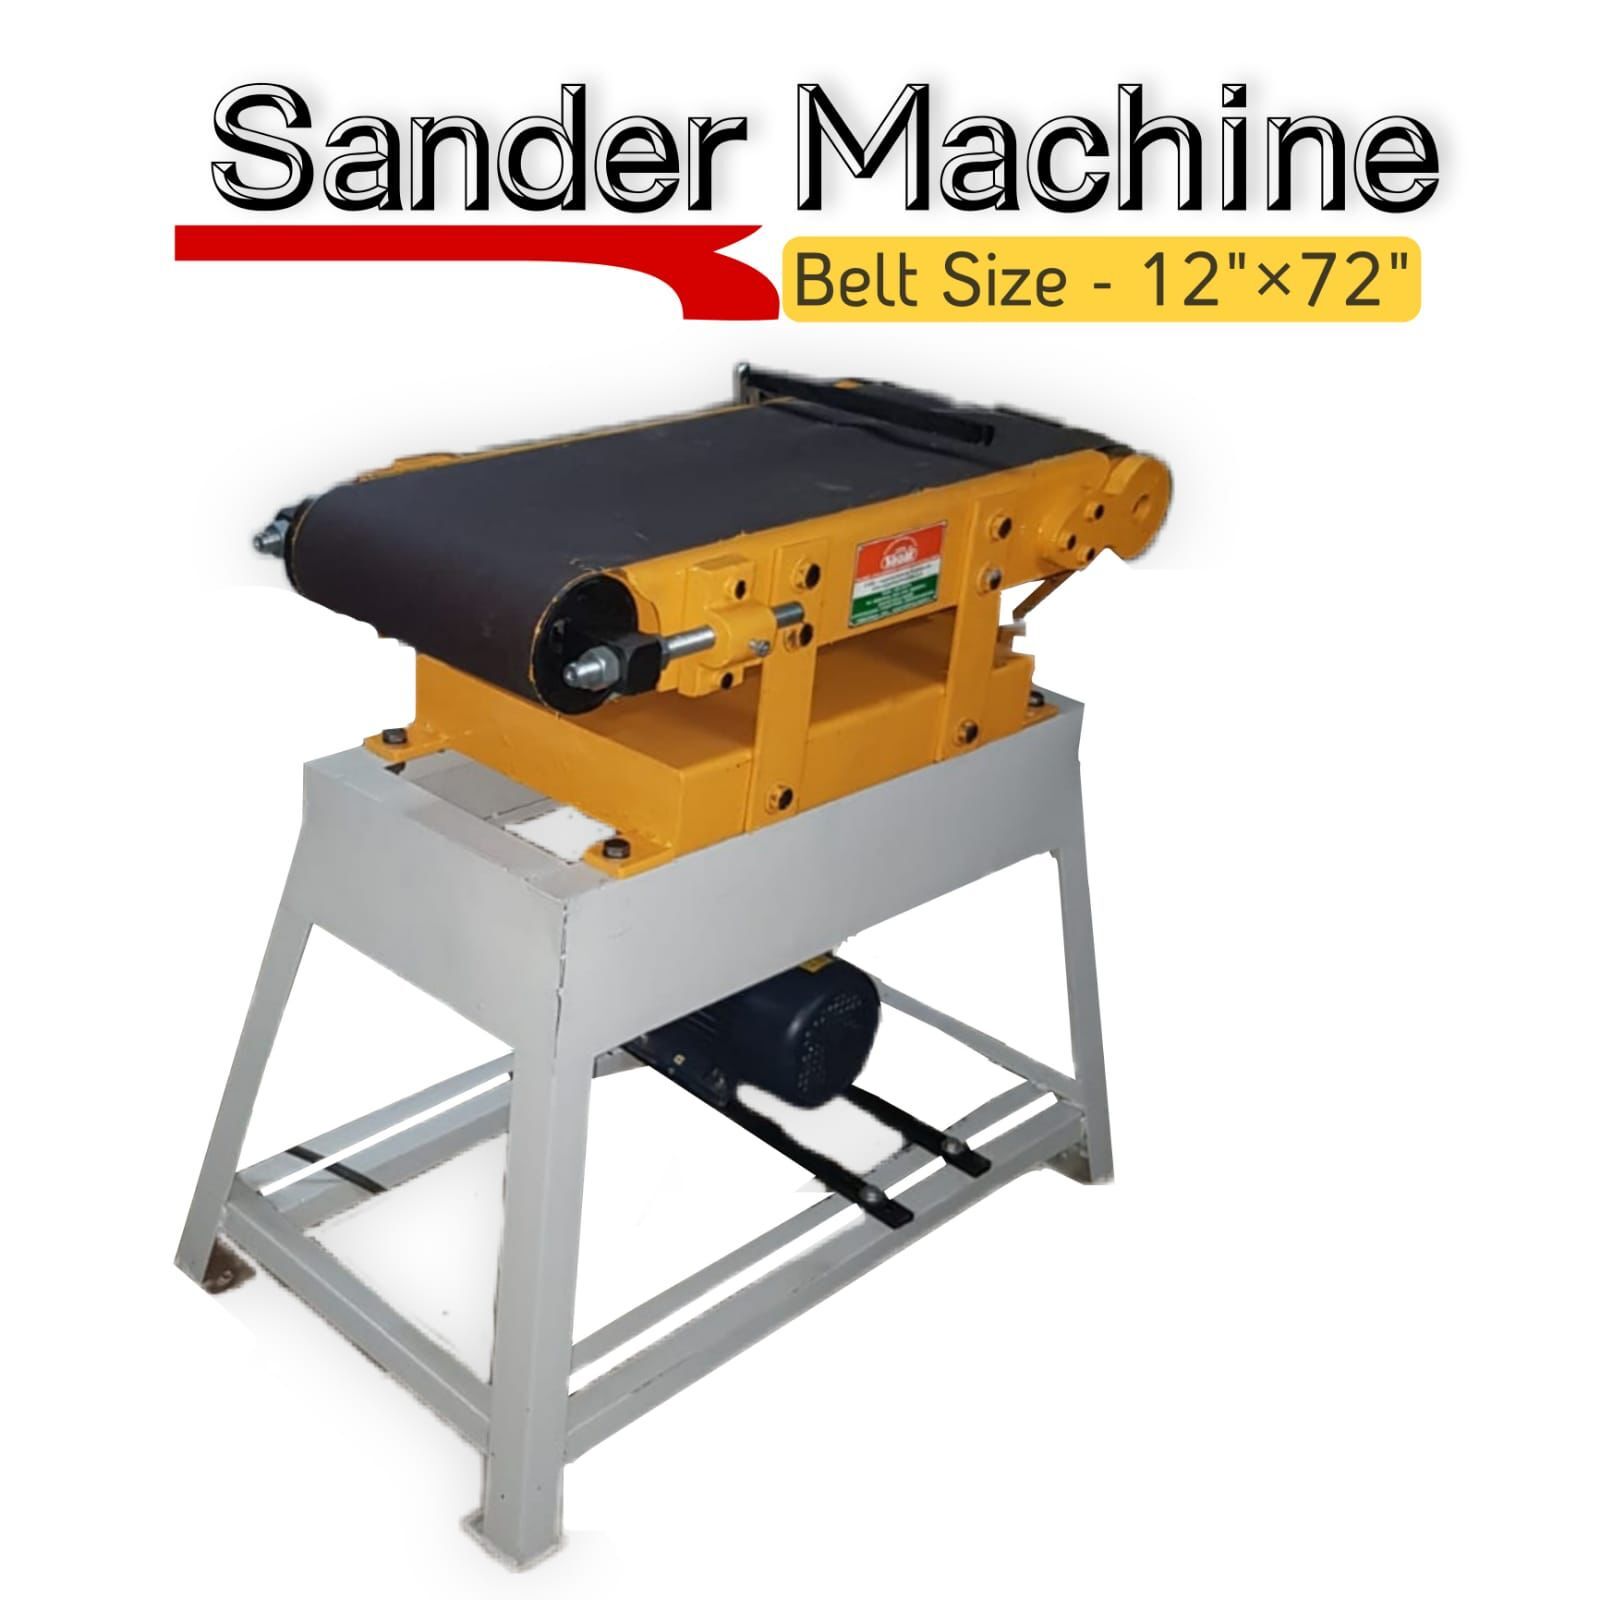 Sander Machines